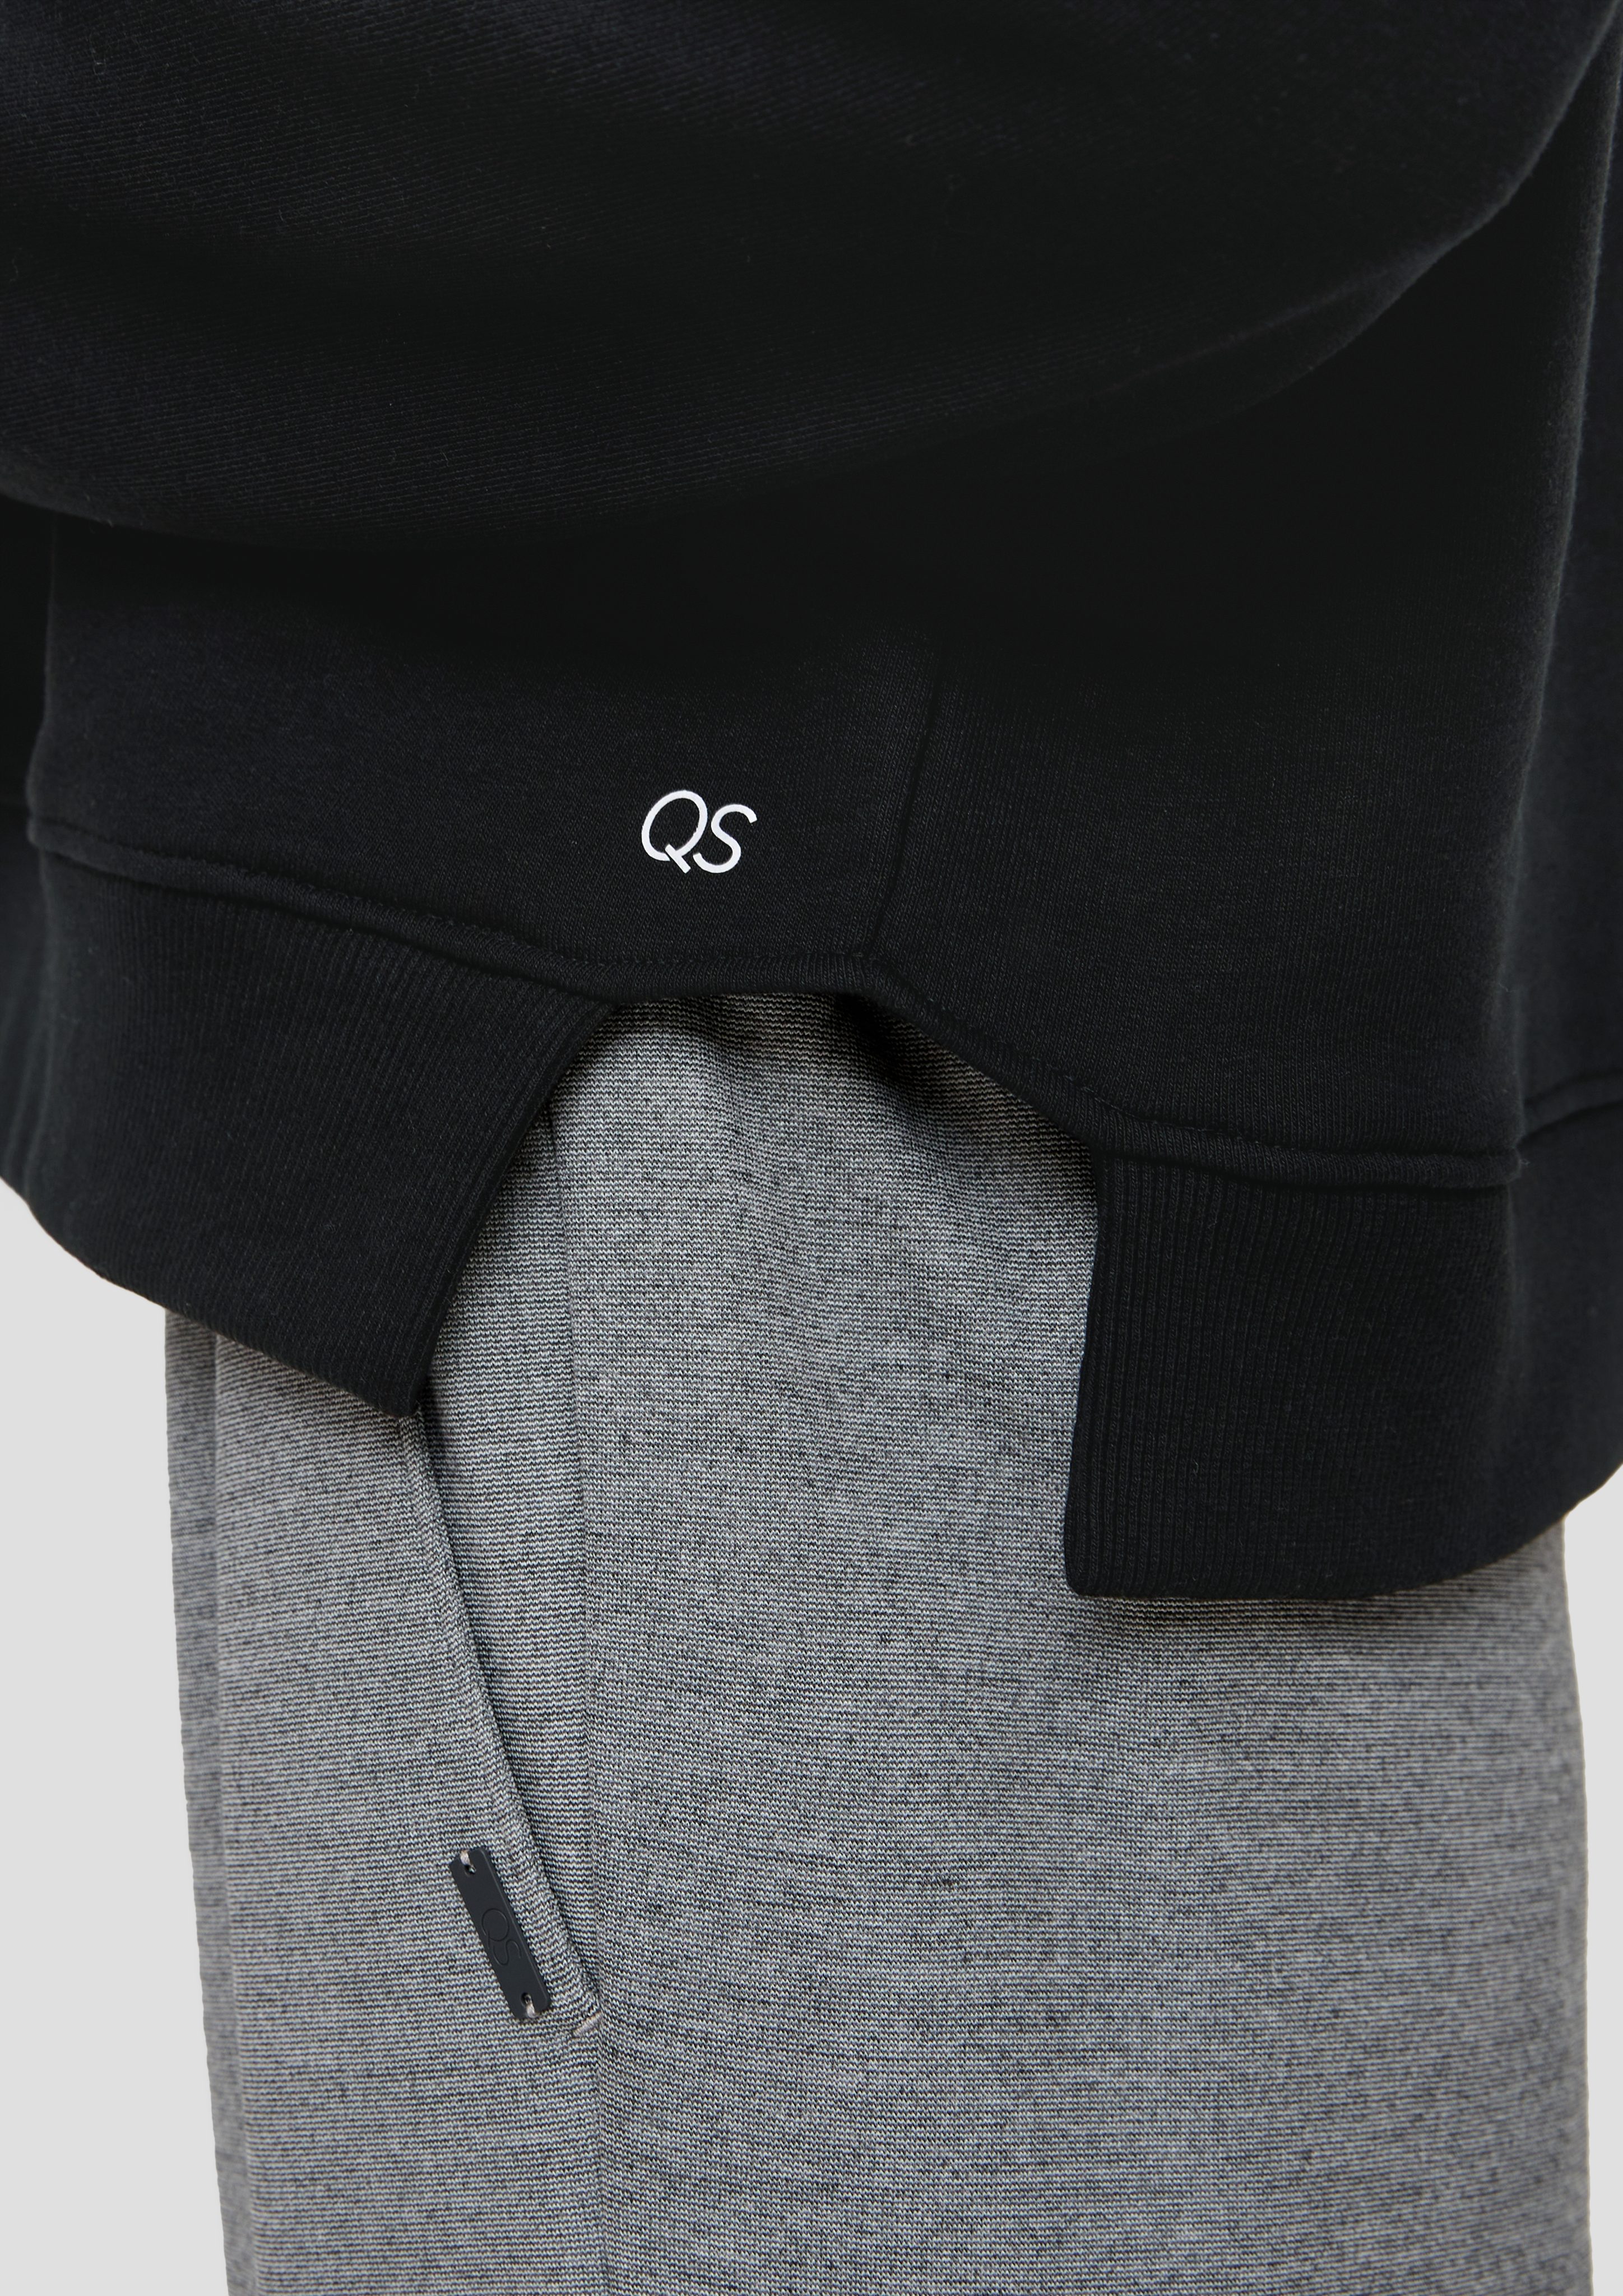 QS Sweatshirt Sweatshirt Logo Saum schwarz offenem seitlich mit